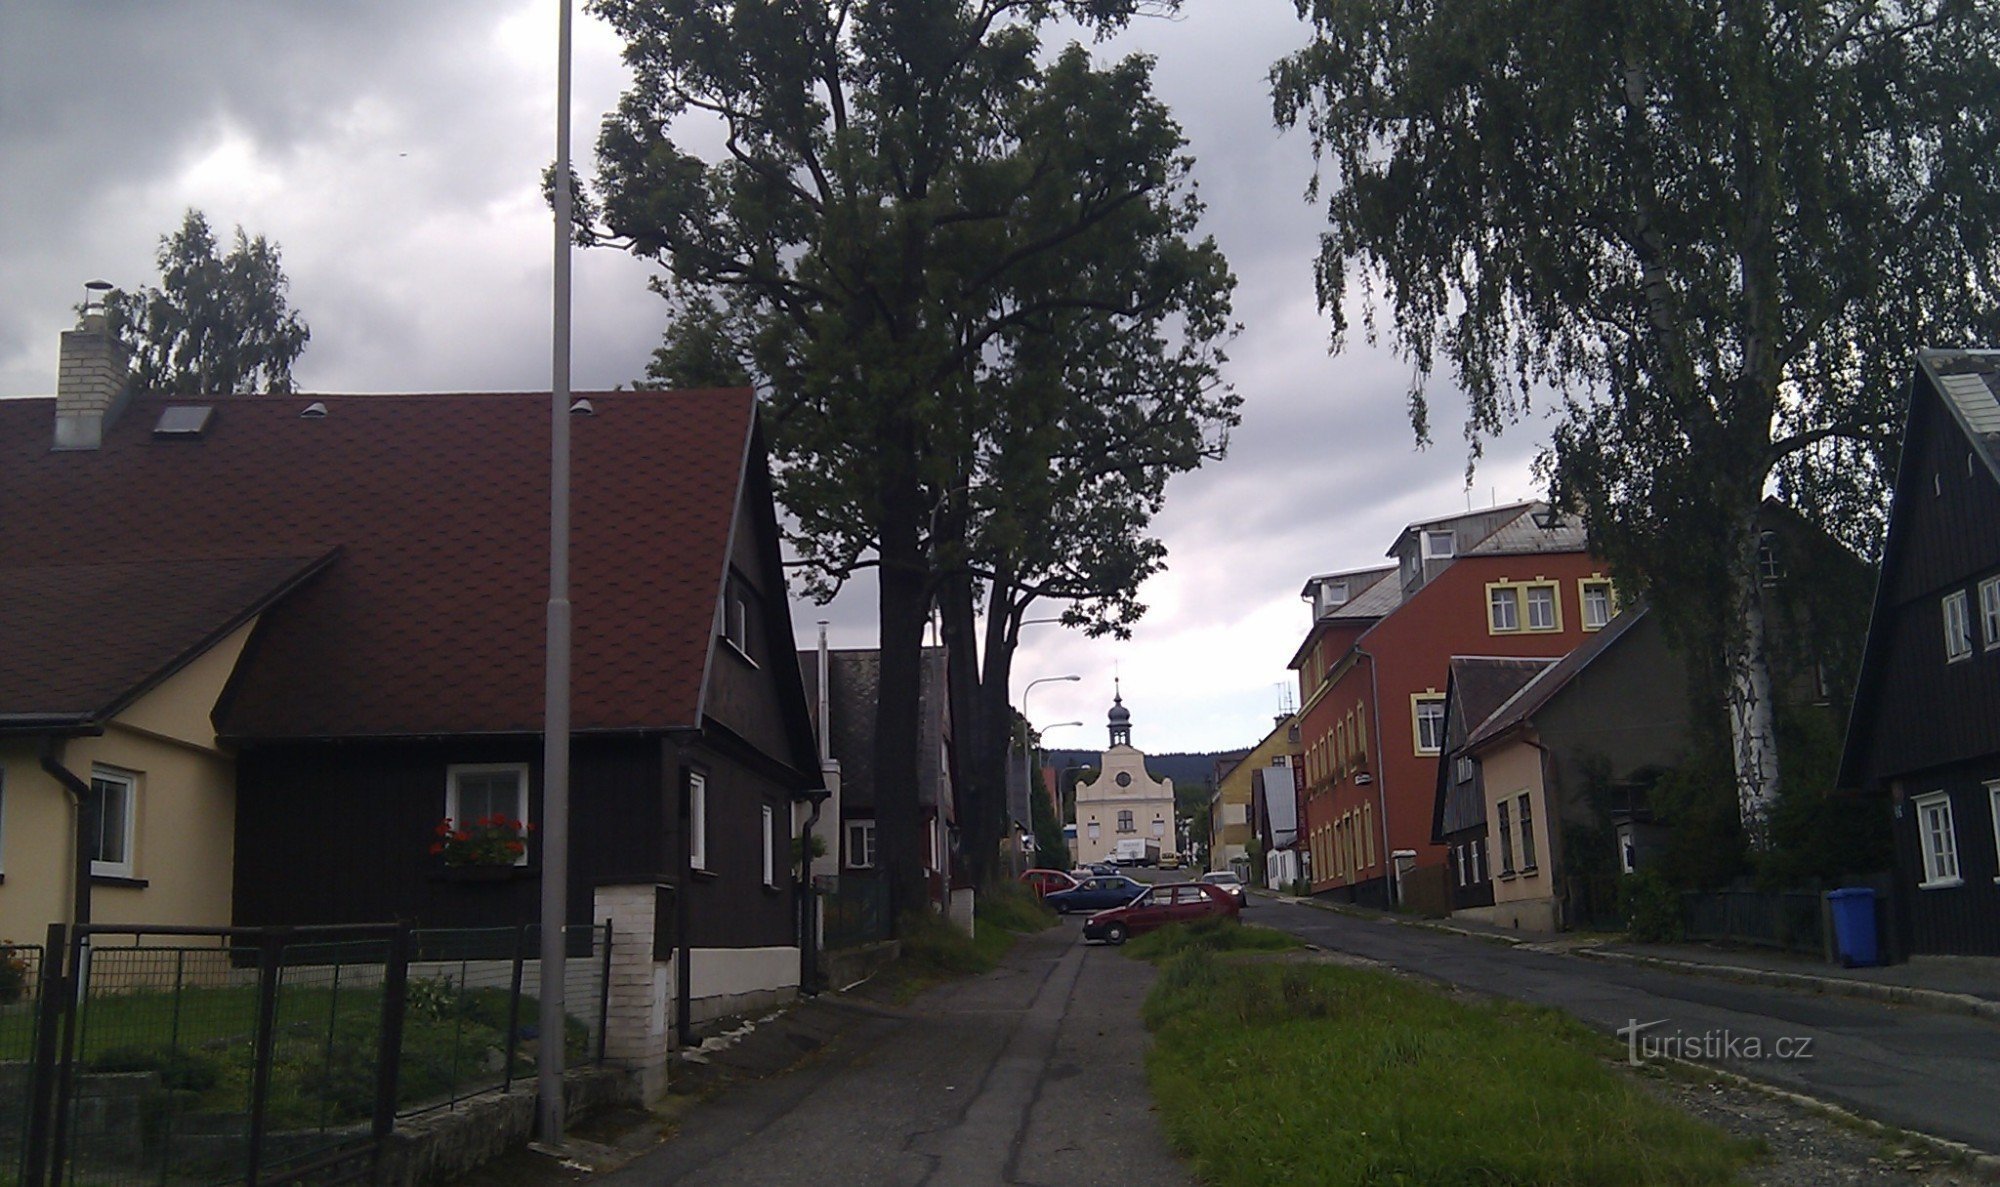 Calle Volgogradska, Liberec